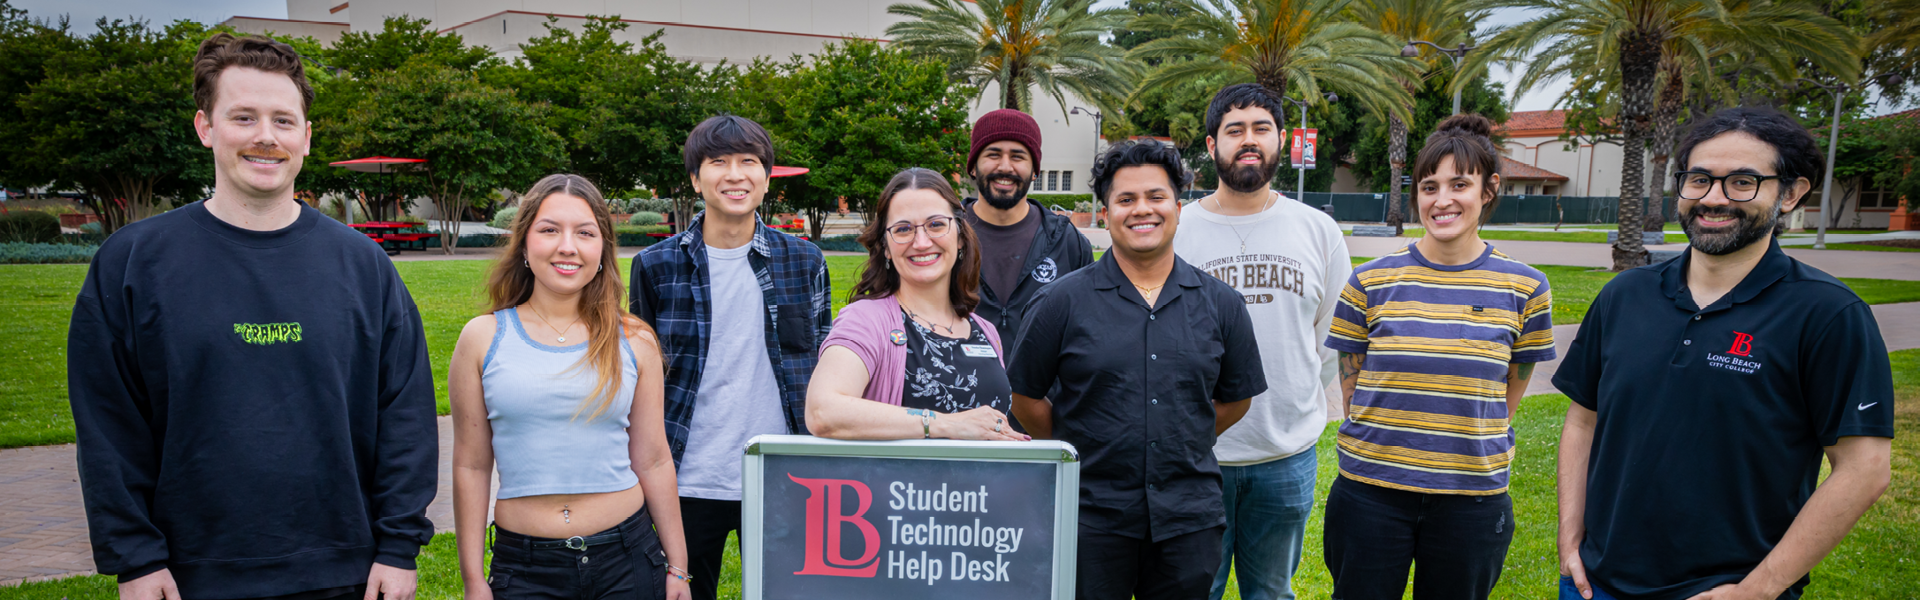 Student Tech Help Desk Long Beach City College